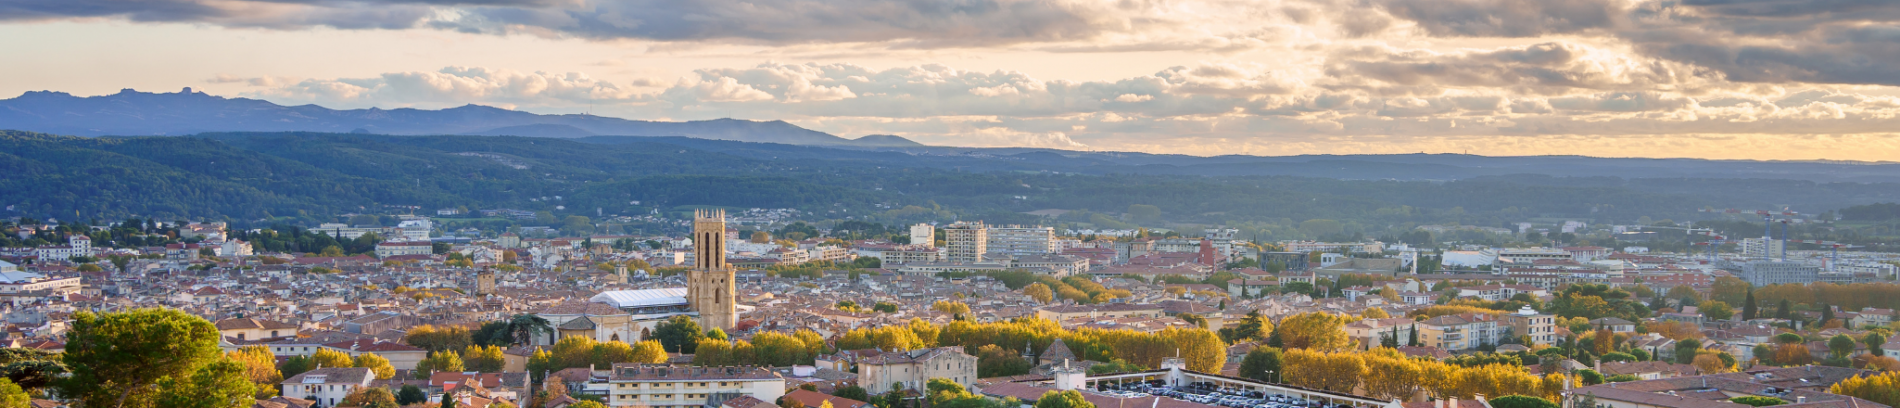 Slide Vue panoramique sur Aix-en-Provence